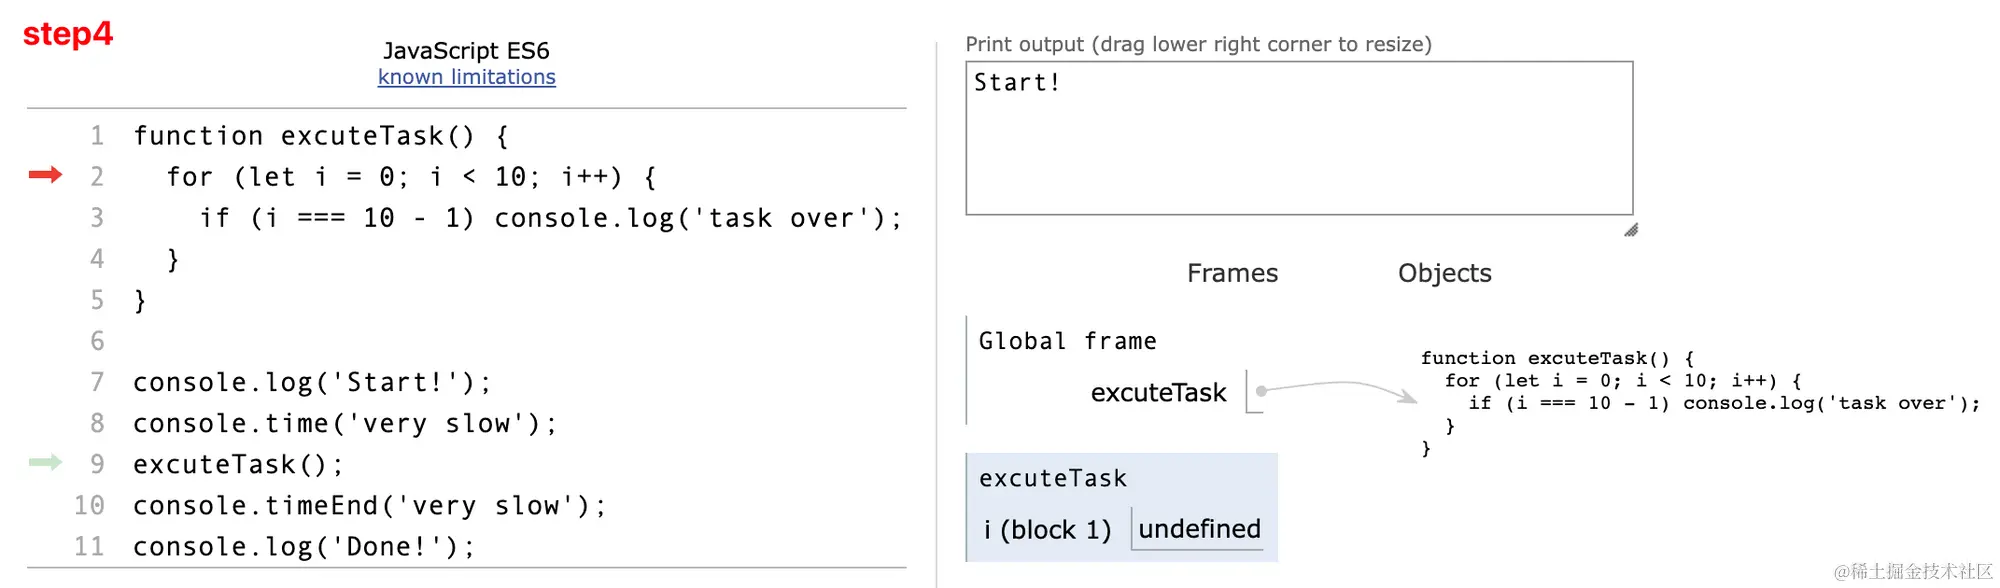 调用 executeTask 函数，创建函数执行上下文，入栈。